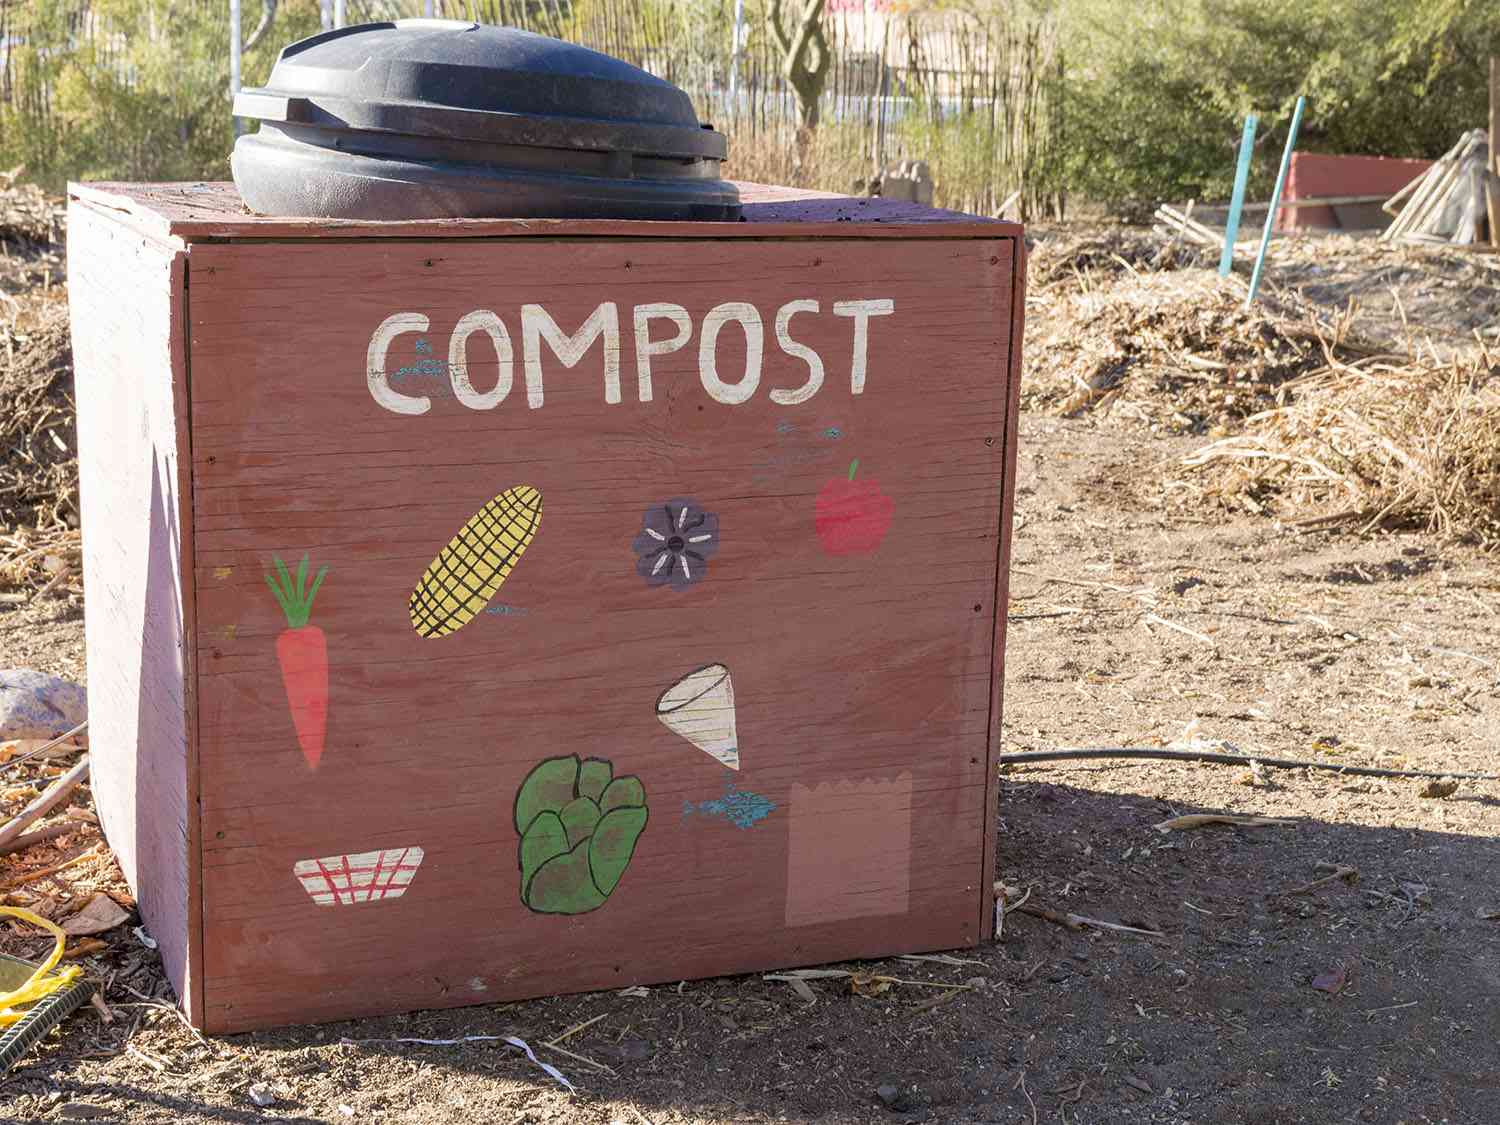 这是一个堆肥容器中发现一个城市花园。桶周围是一个木制的盒子装饰着蔬菜的照片。